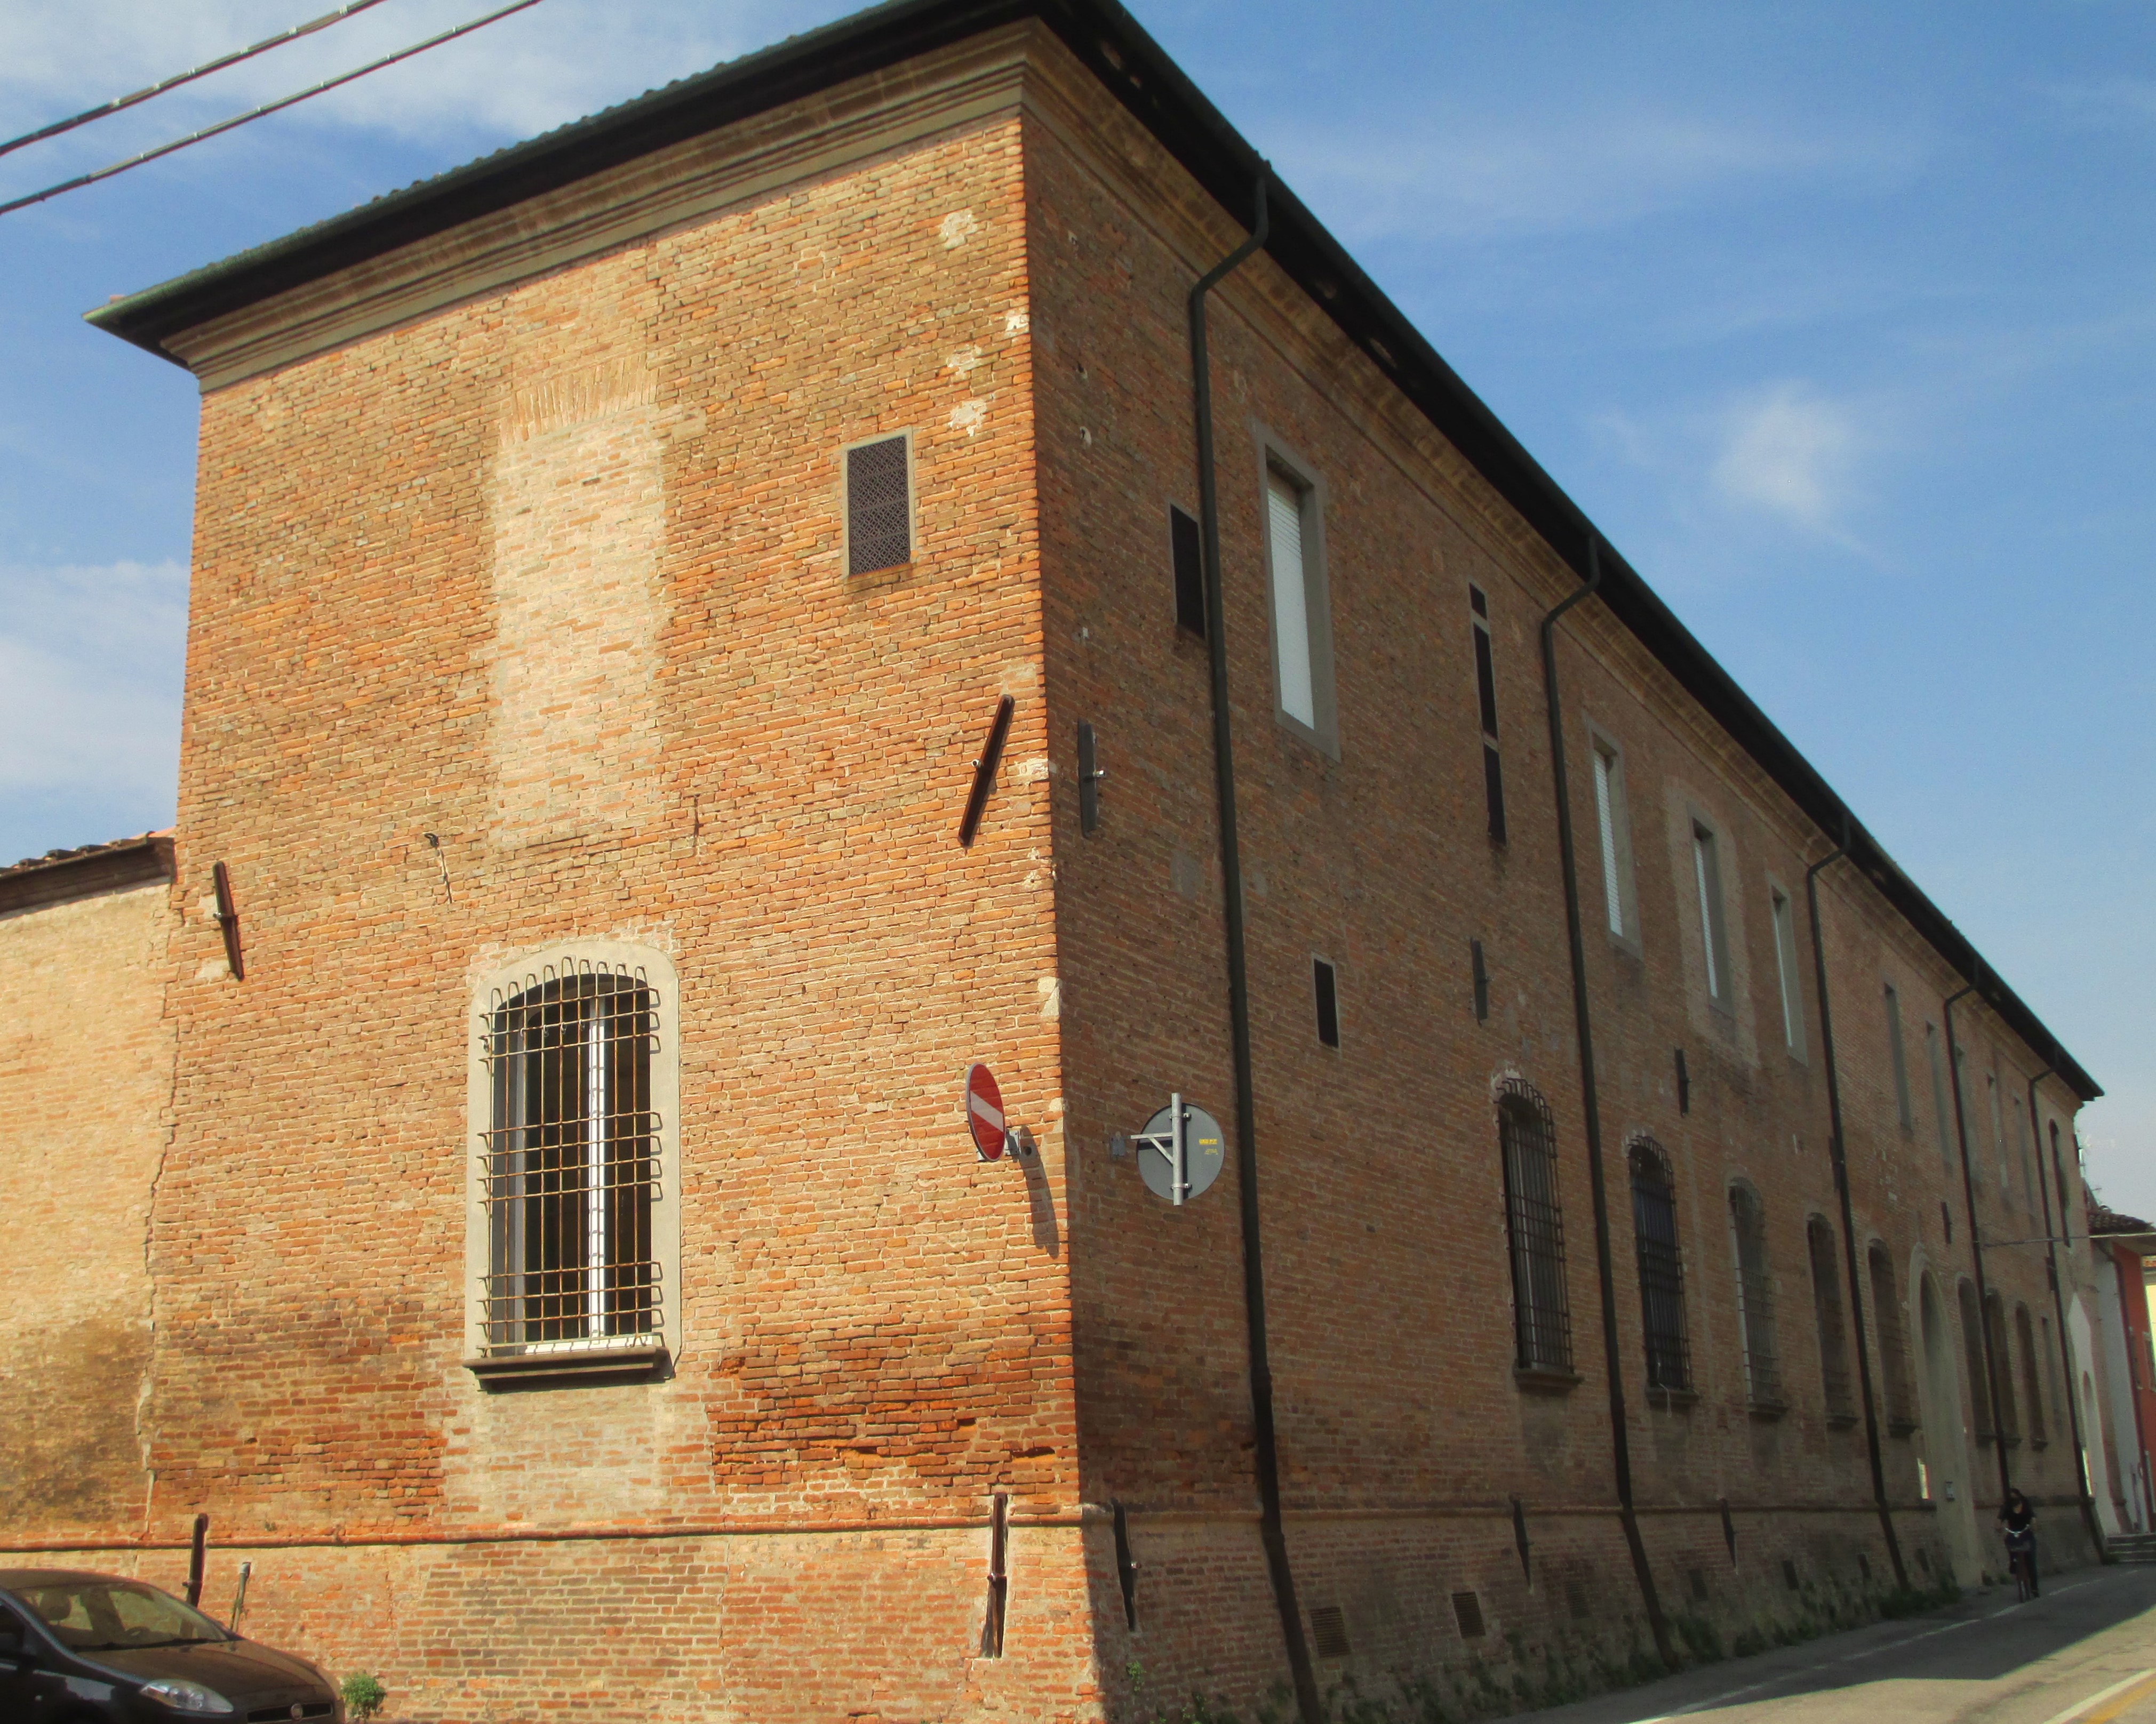 Convento di S. Chiara (convento) - Pieve di Cento (BO) 